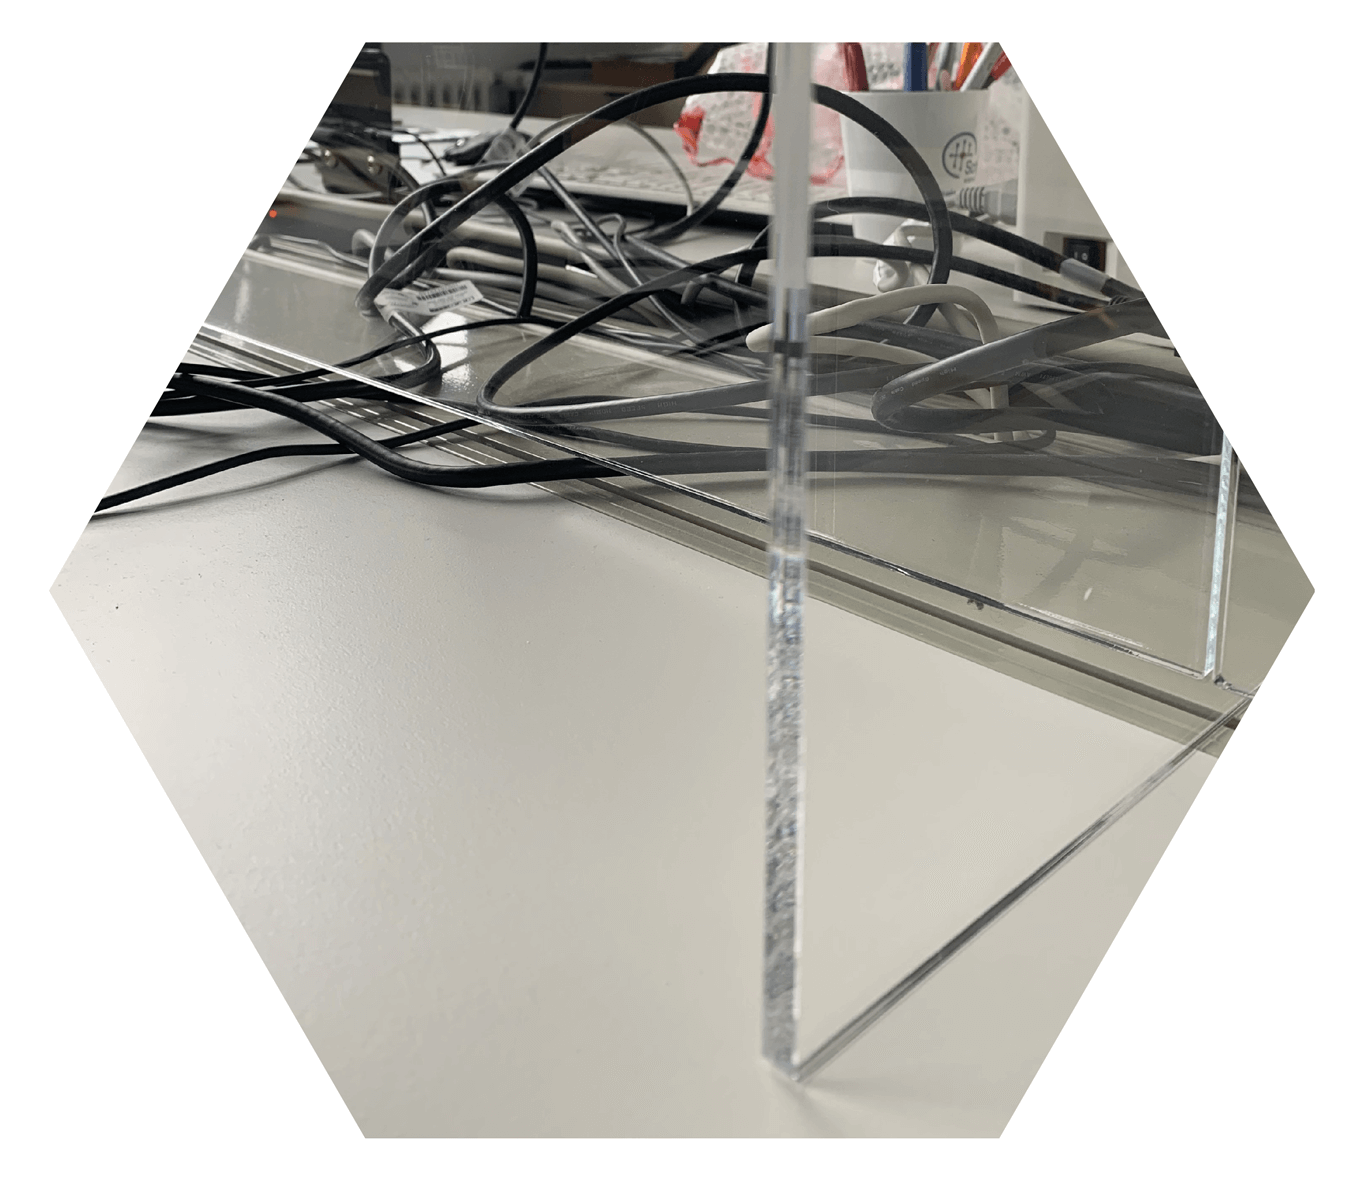 Acrylschutzwand 1 cm über Boden für Kabeldurchlass